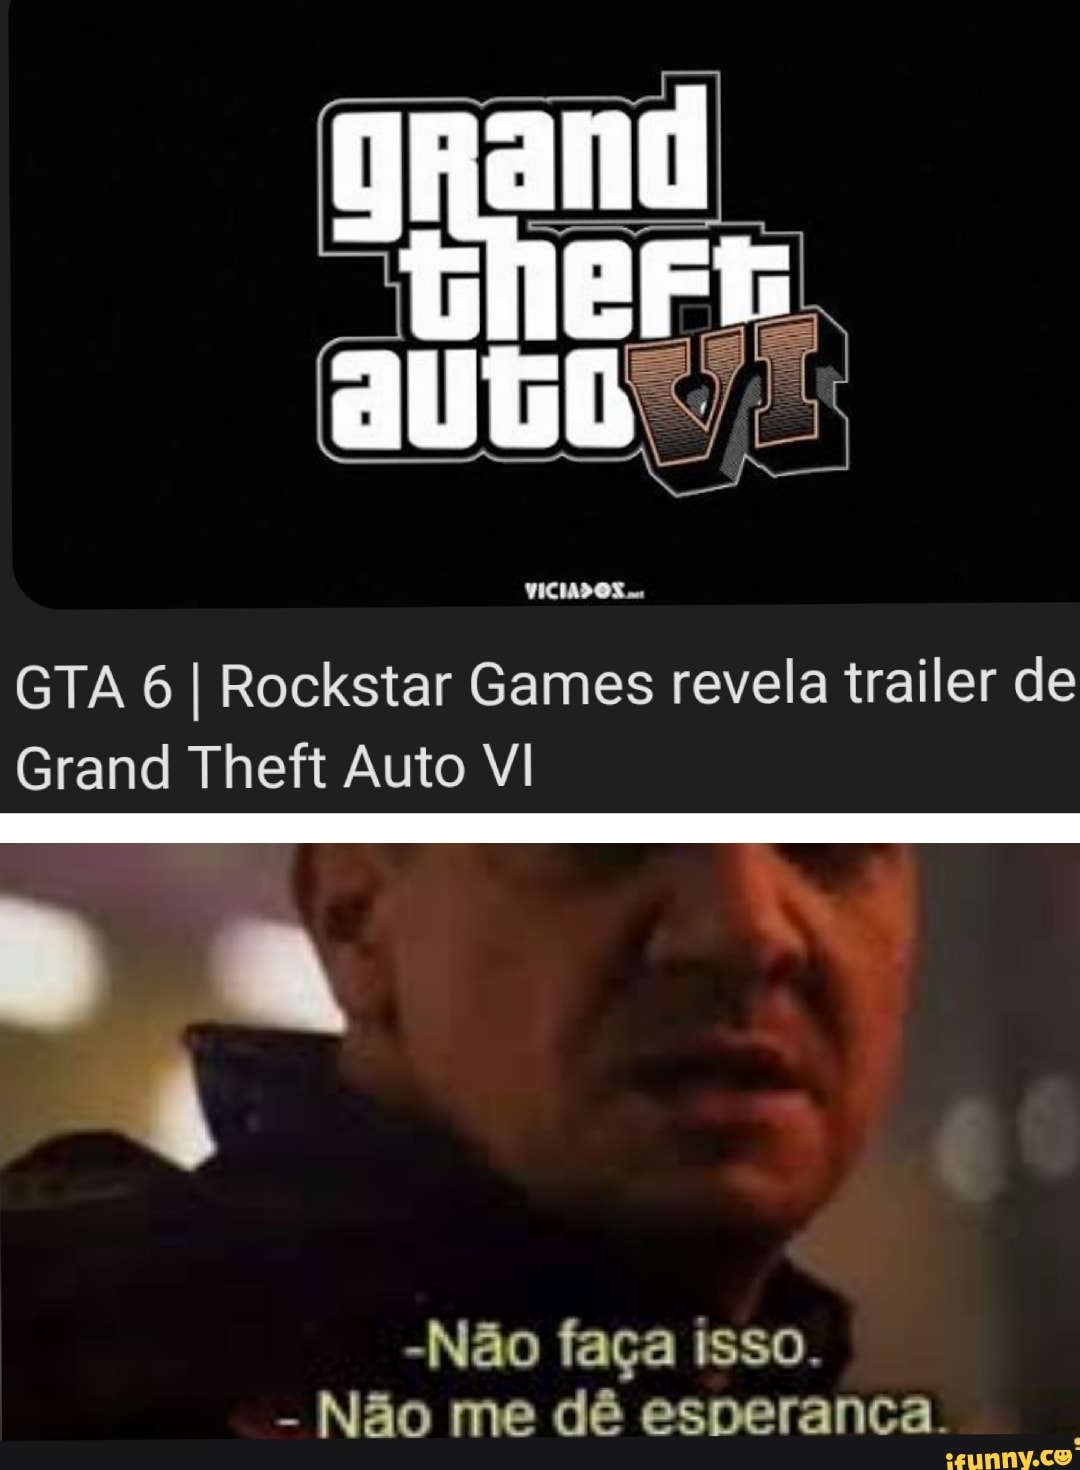 O que o trailer de GTA VI revela sobre o jogo